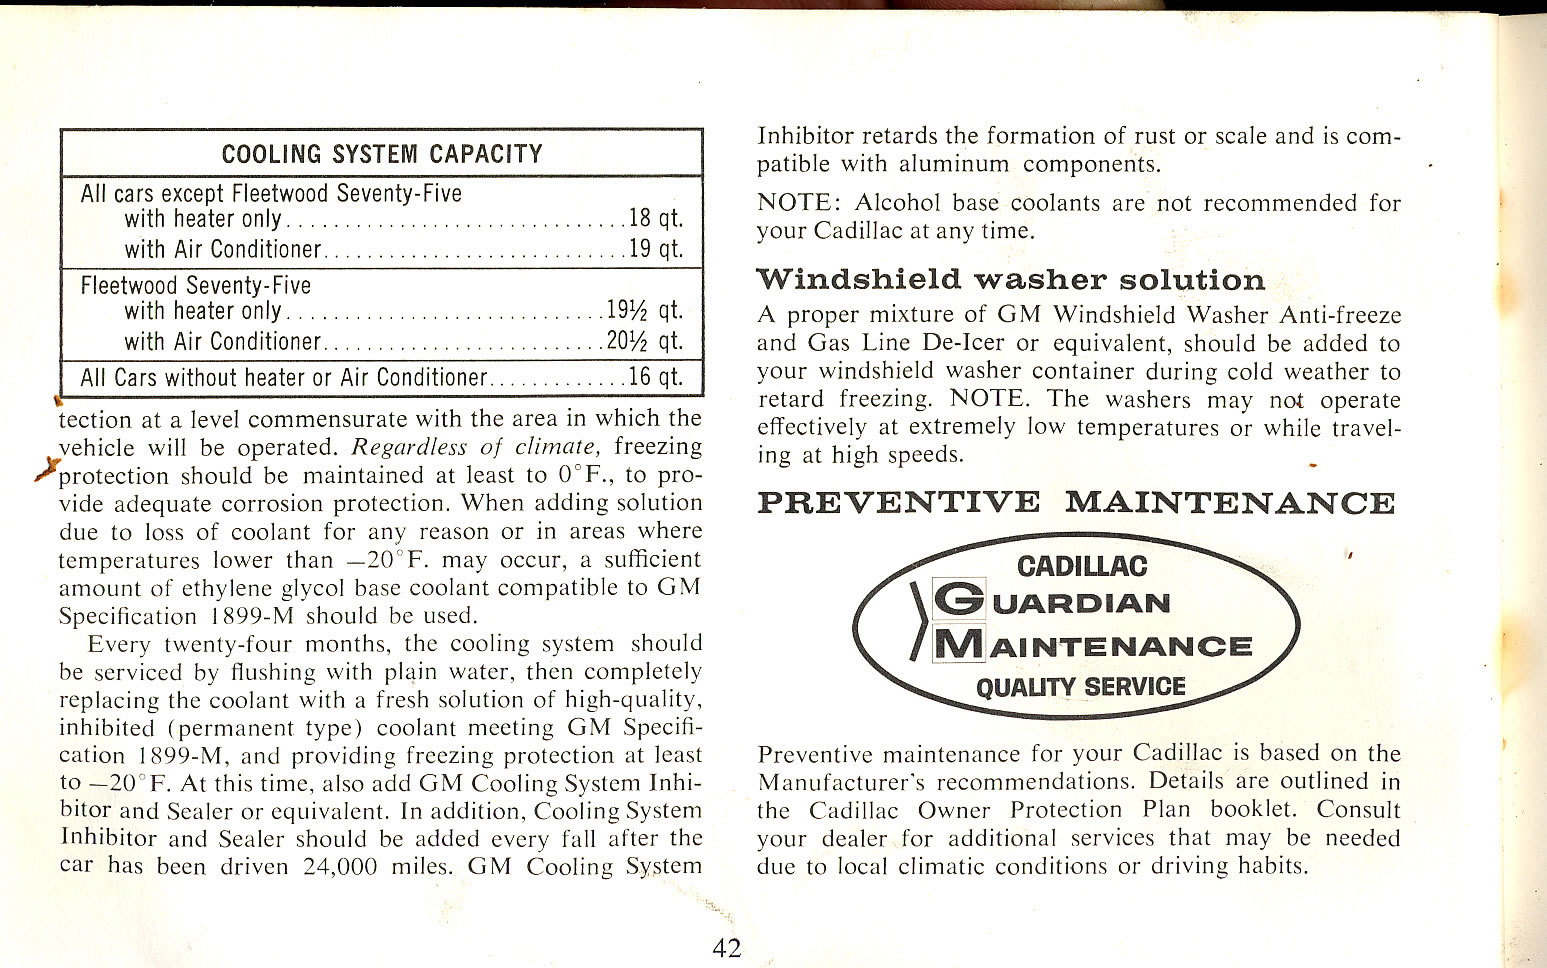 1965_Cadillac_Manual-42